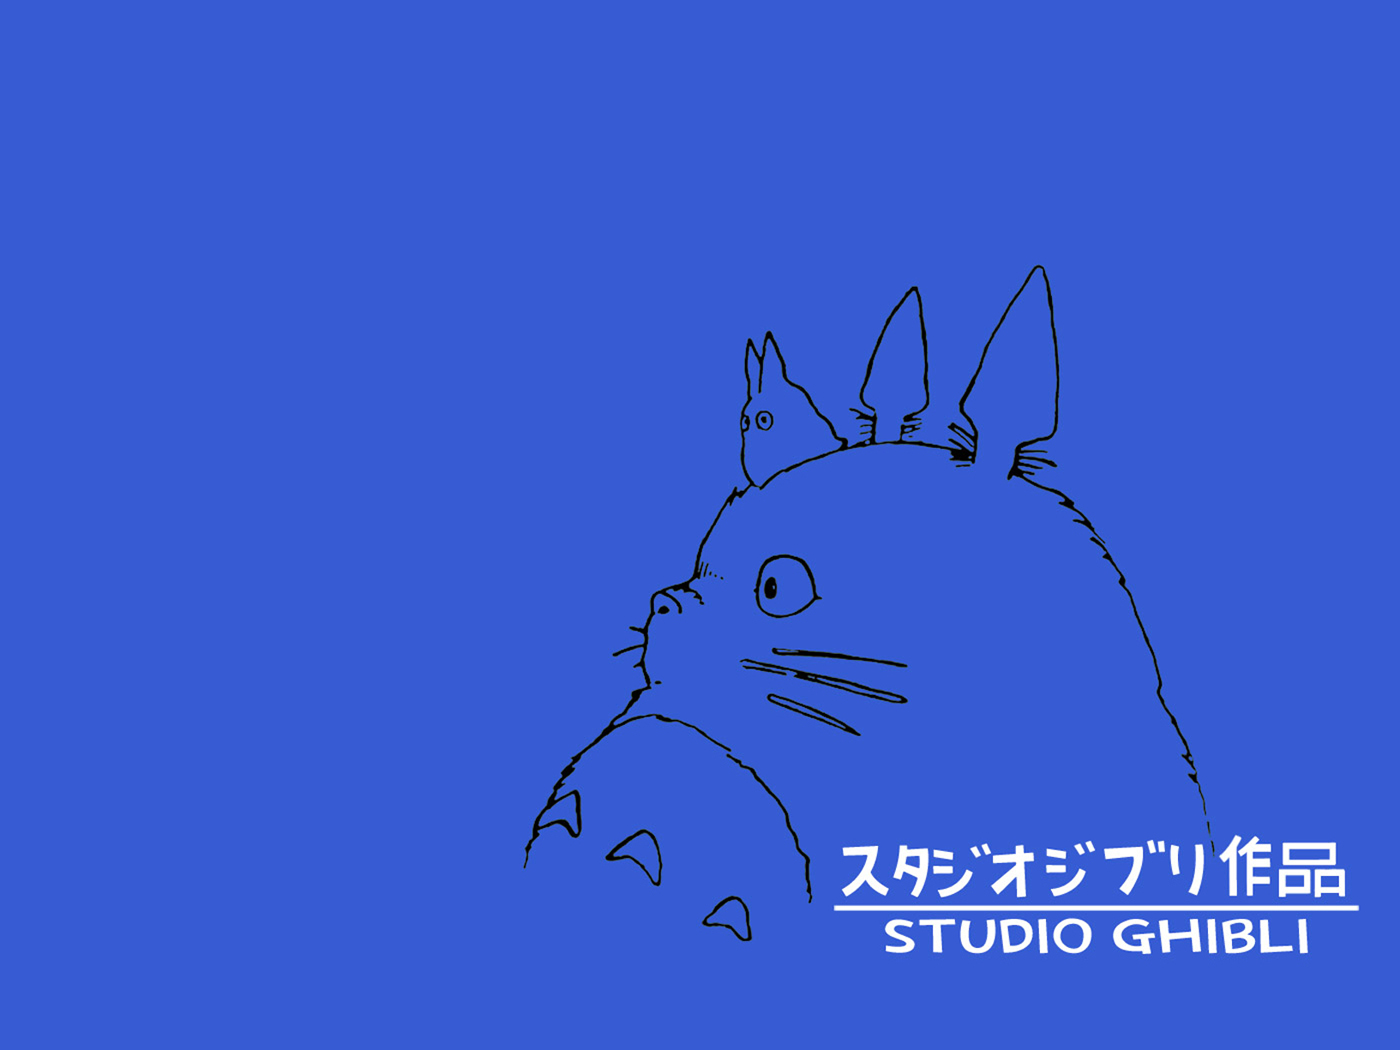 HD Wallpaper Studio Ghibli Scenery X Kb Jpeg